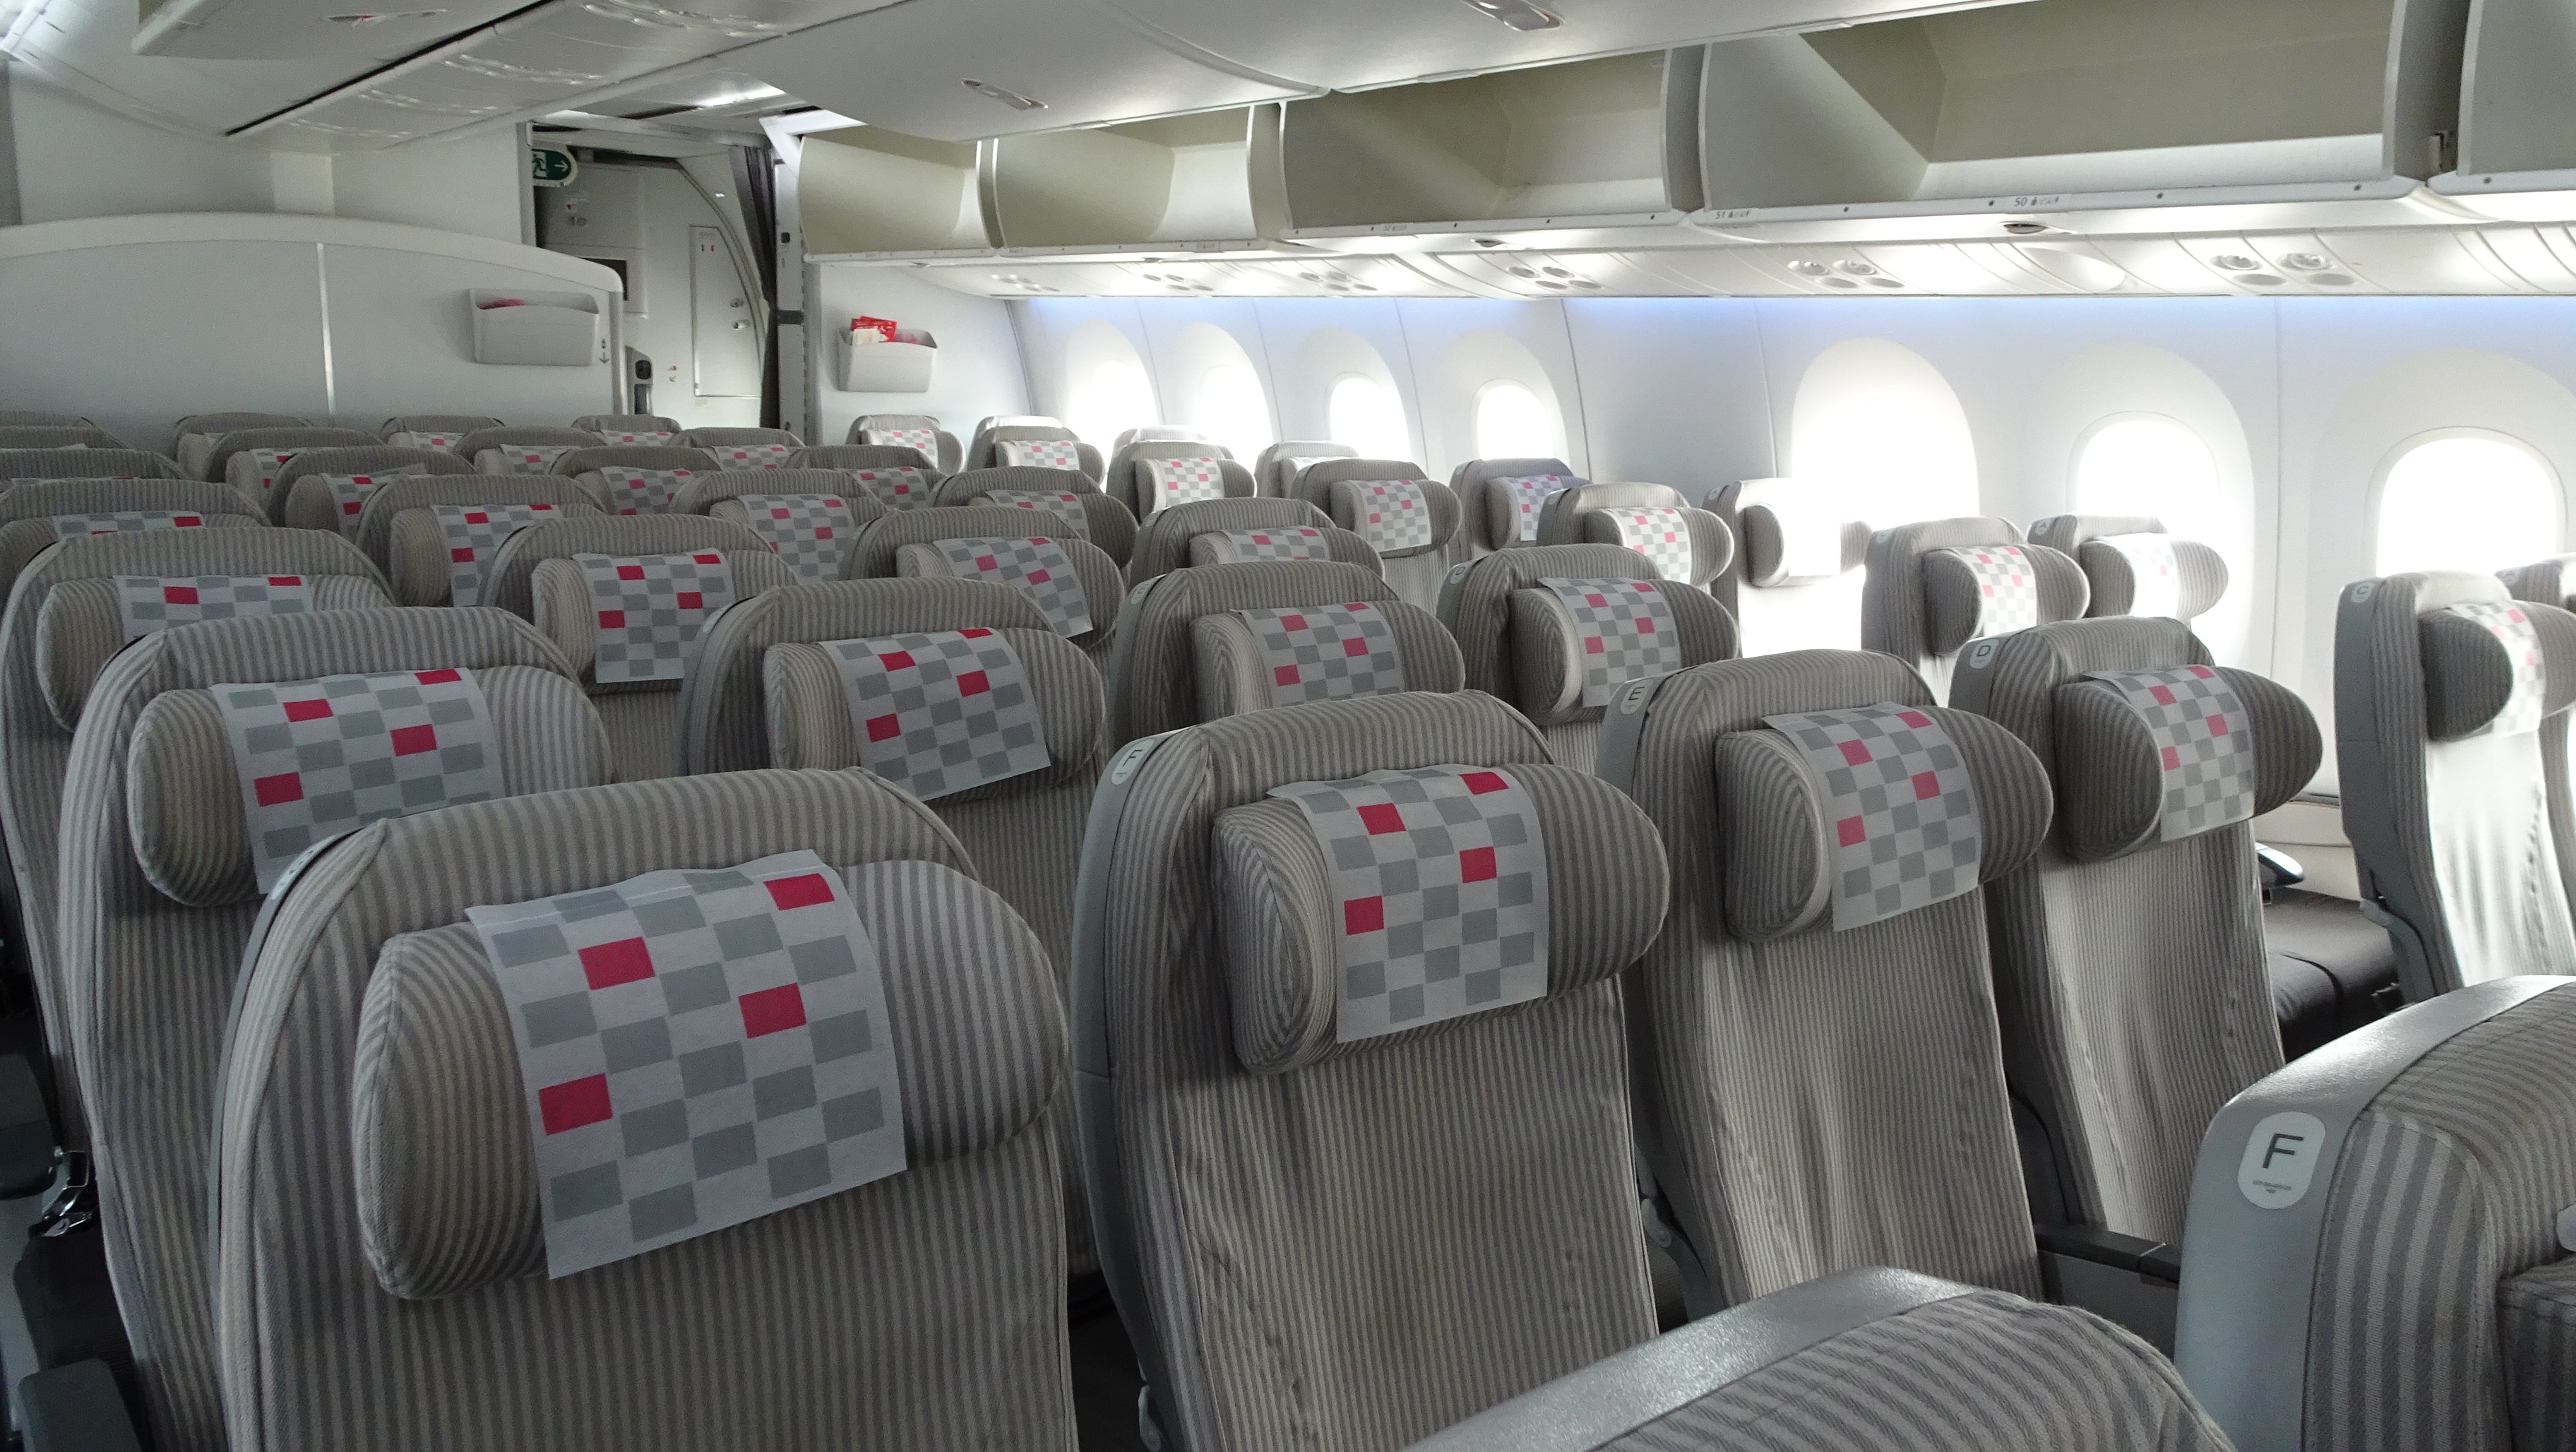 Jal 787 8 国際線シートでのエコノミークラスのオススメ席は18列もしくは45列 Yas的なモノ